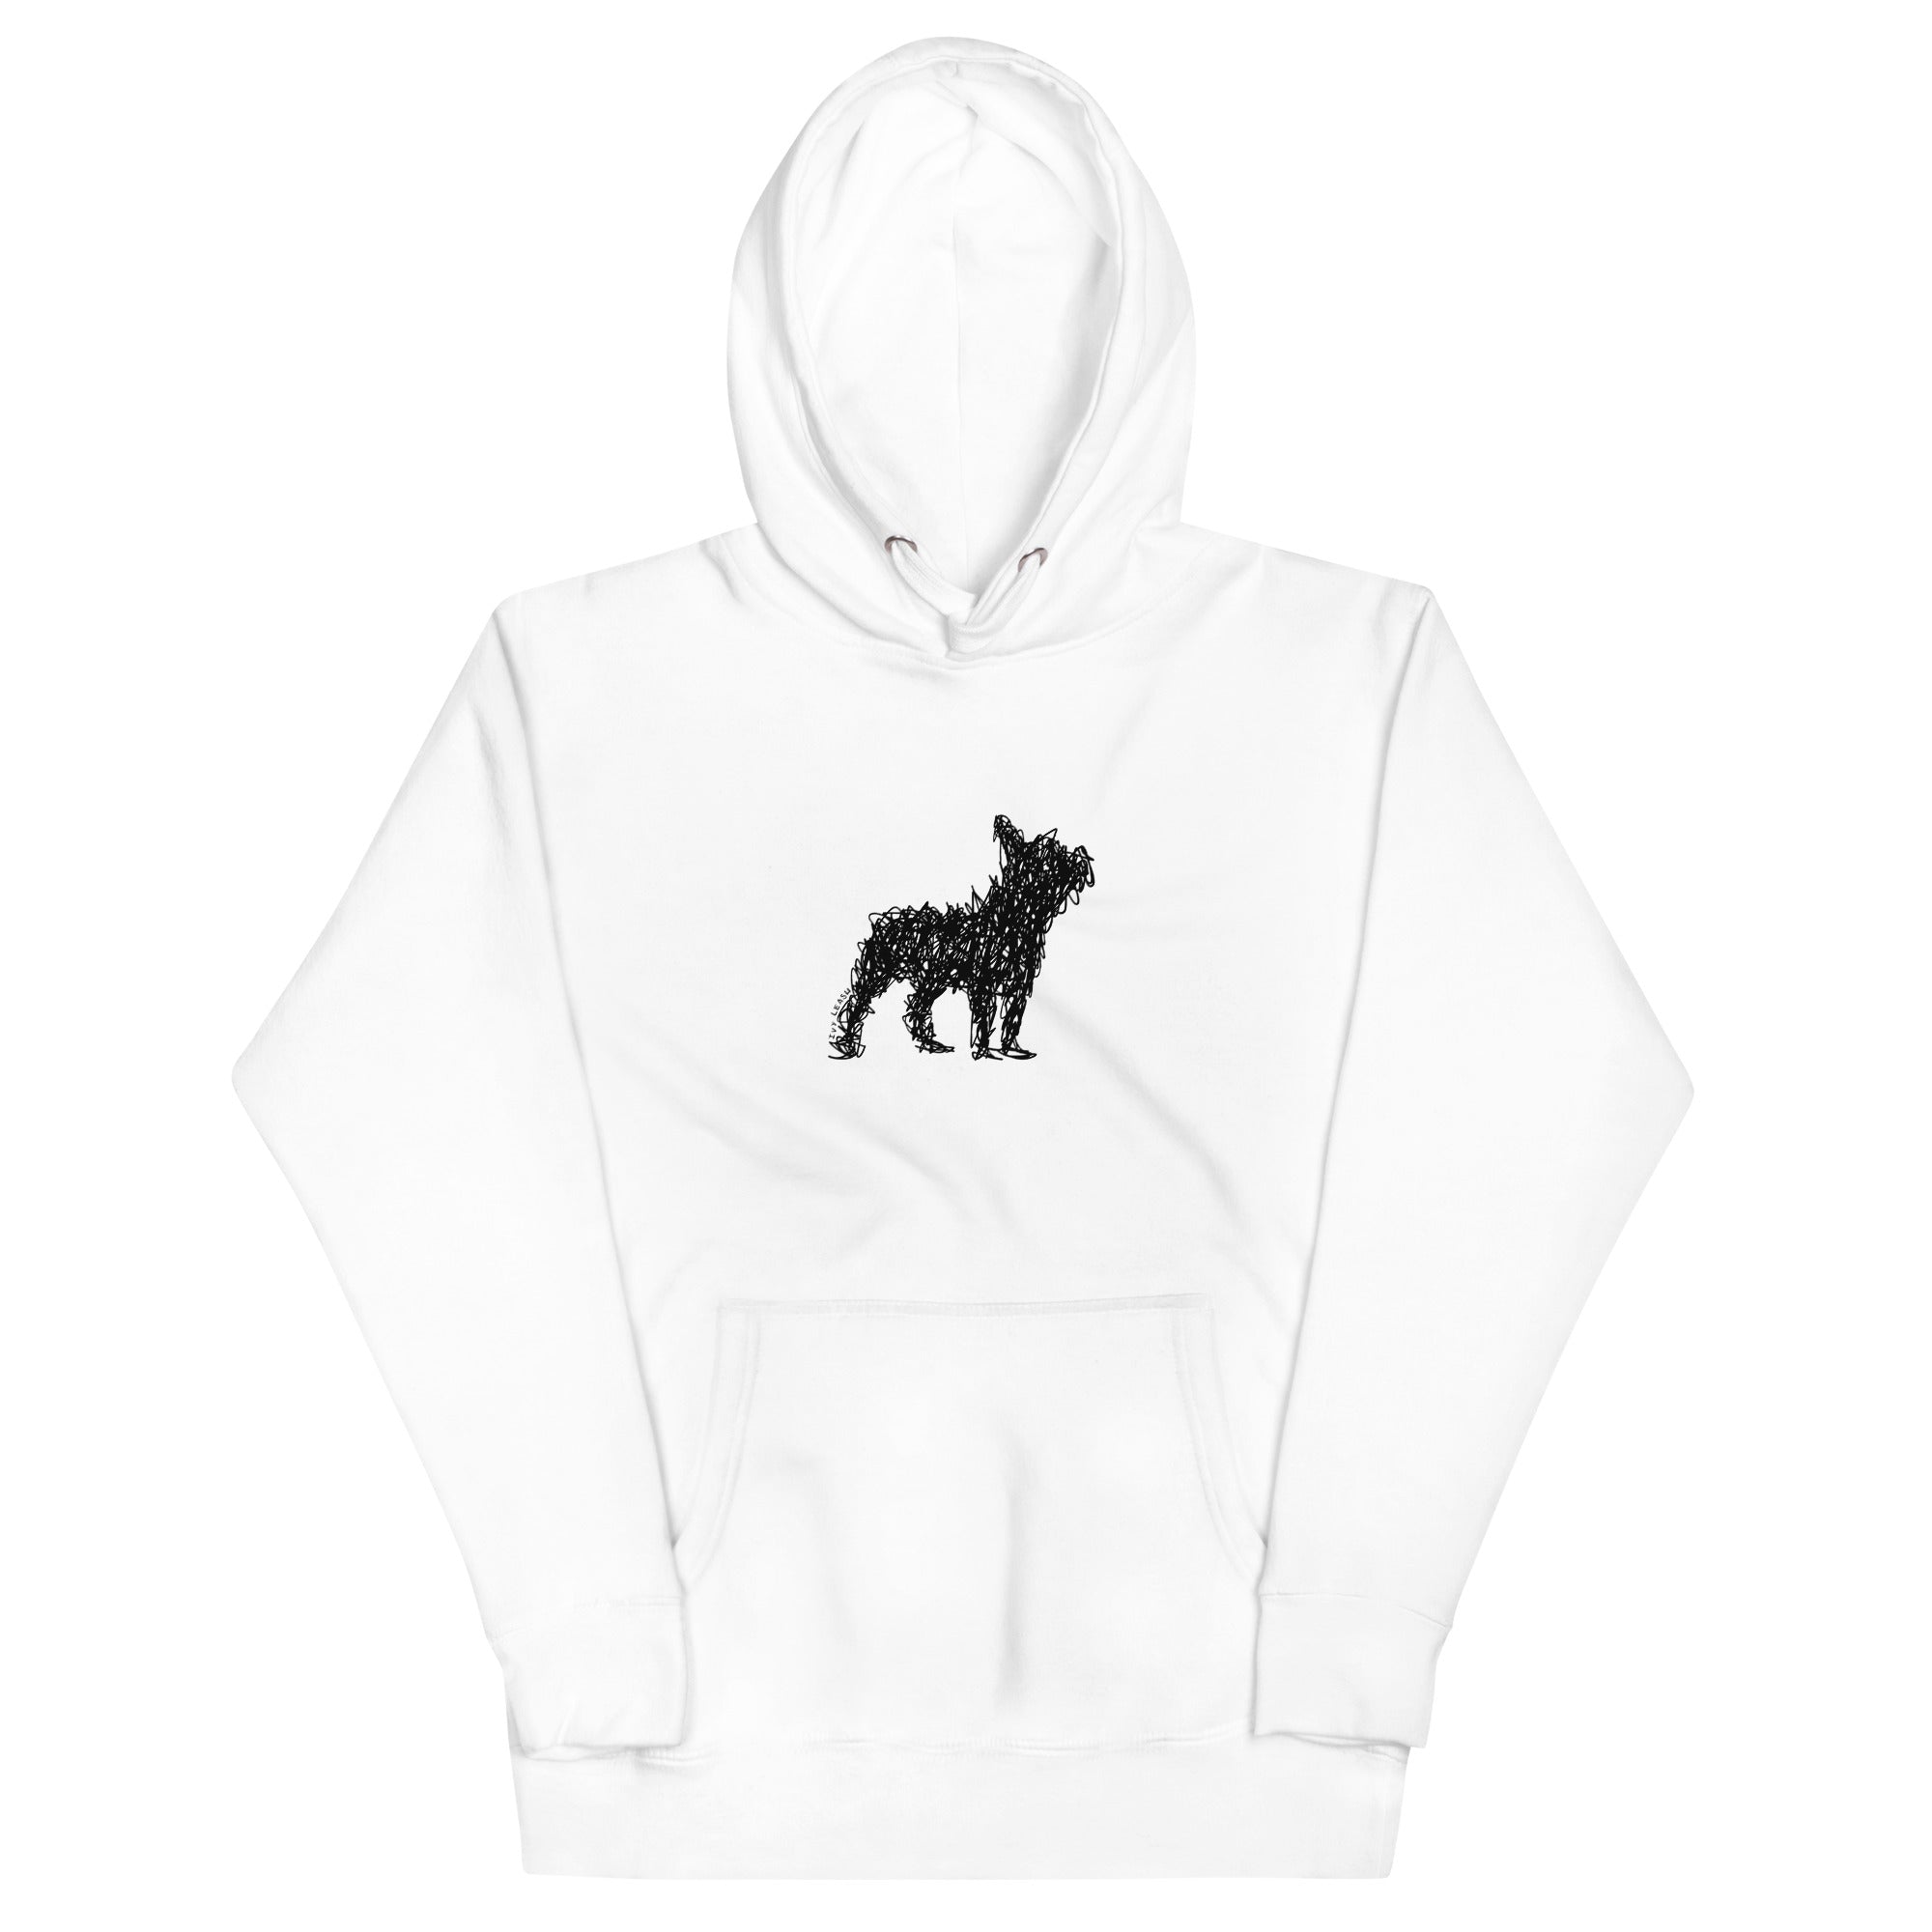 French Bulldog Unisex Hoodie - Clothing